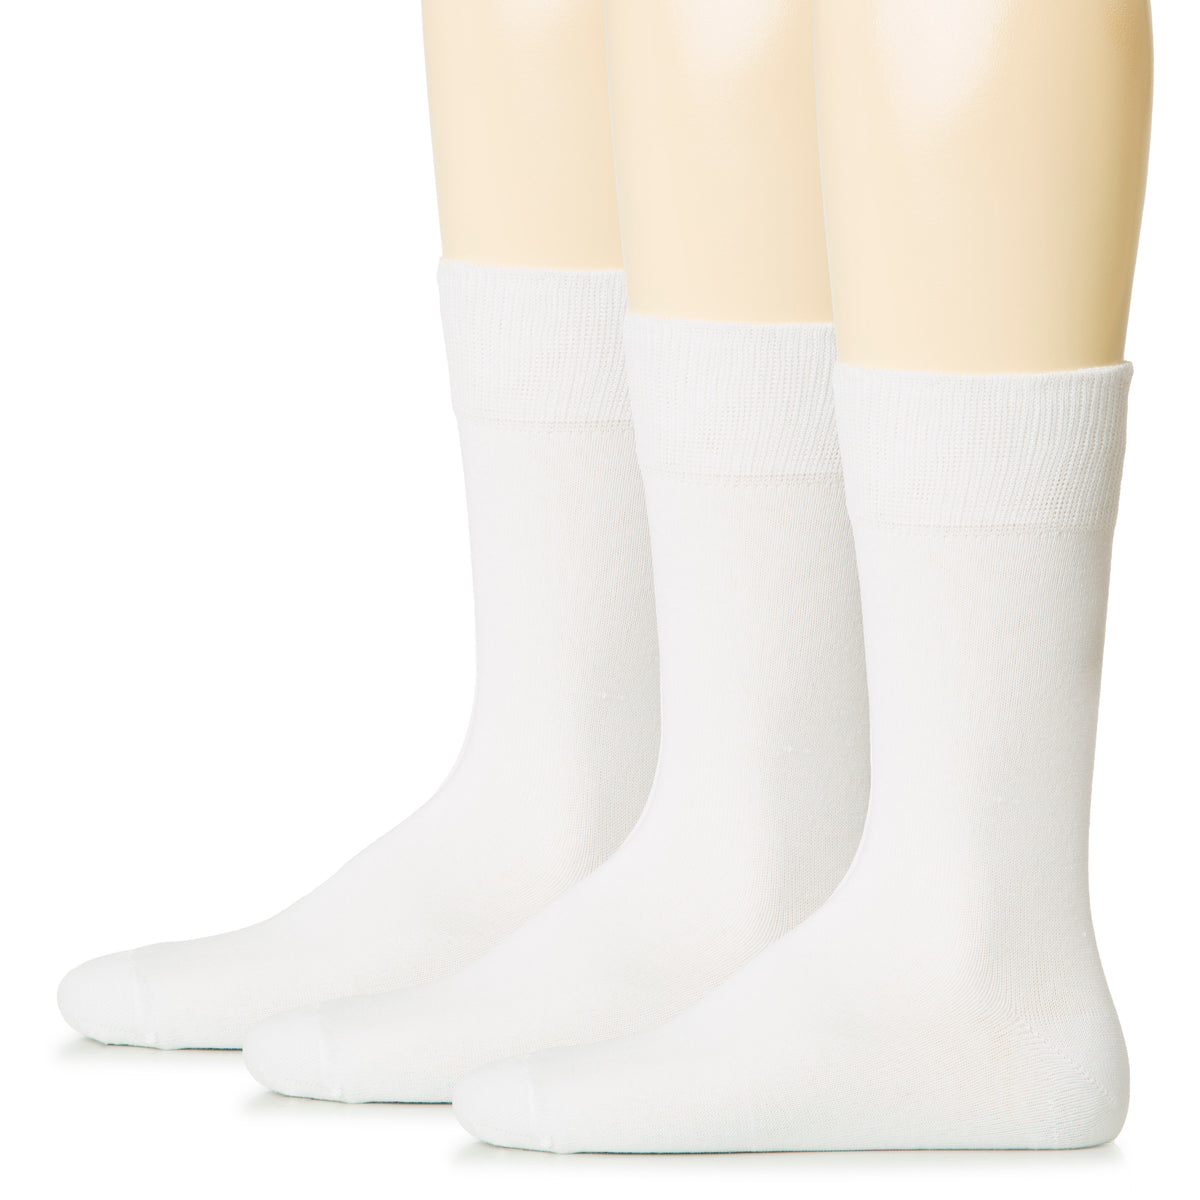 Hugh Ugoli Men Cotton Dress Socks XL / L / M / S Sizes, 3 Pairs | Shoe Size: 6-8 | White